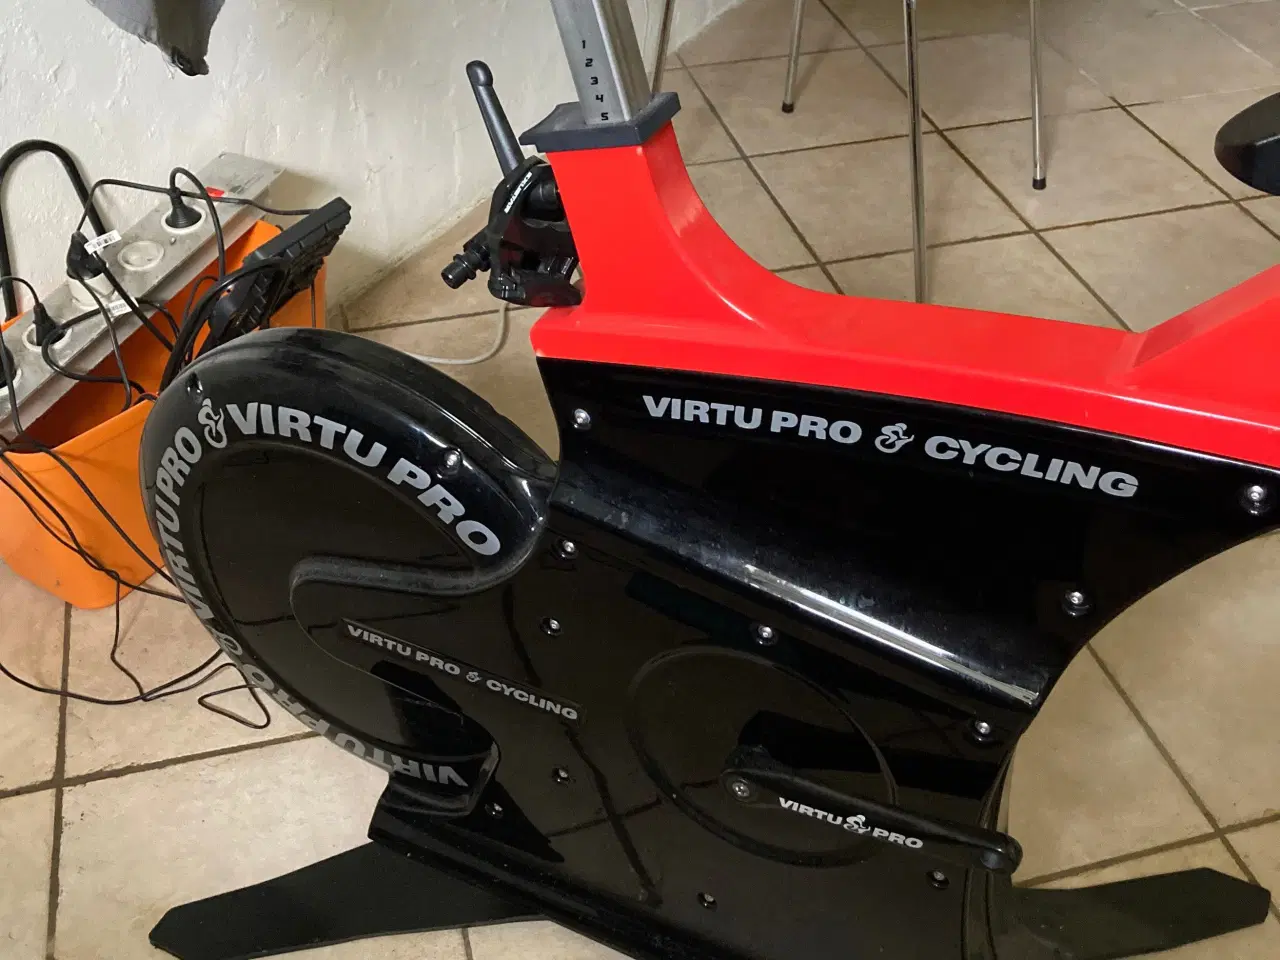 Billede 1 - Virtu pro e-cykling Ny aldrig kørt kun test tur